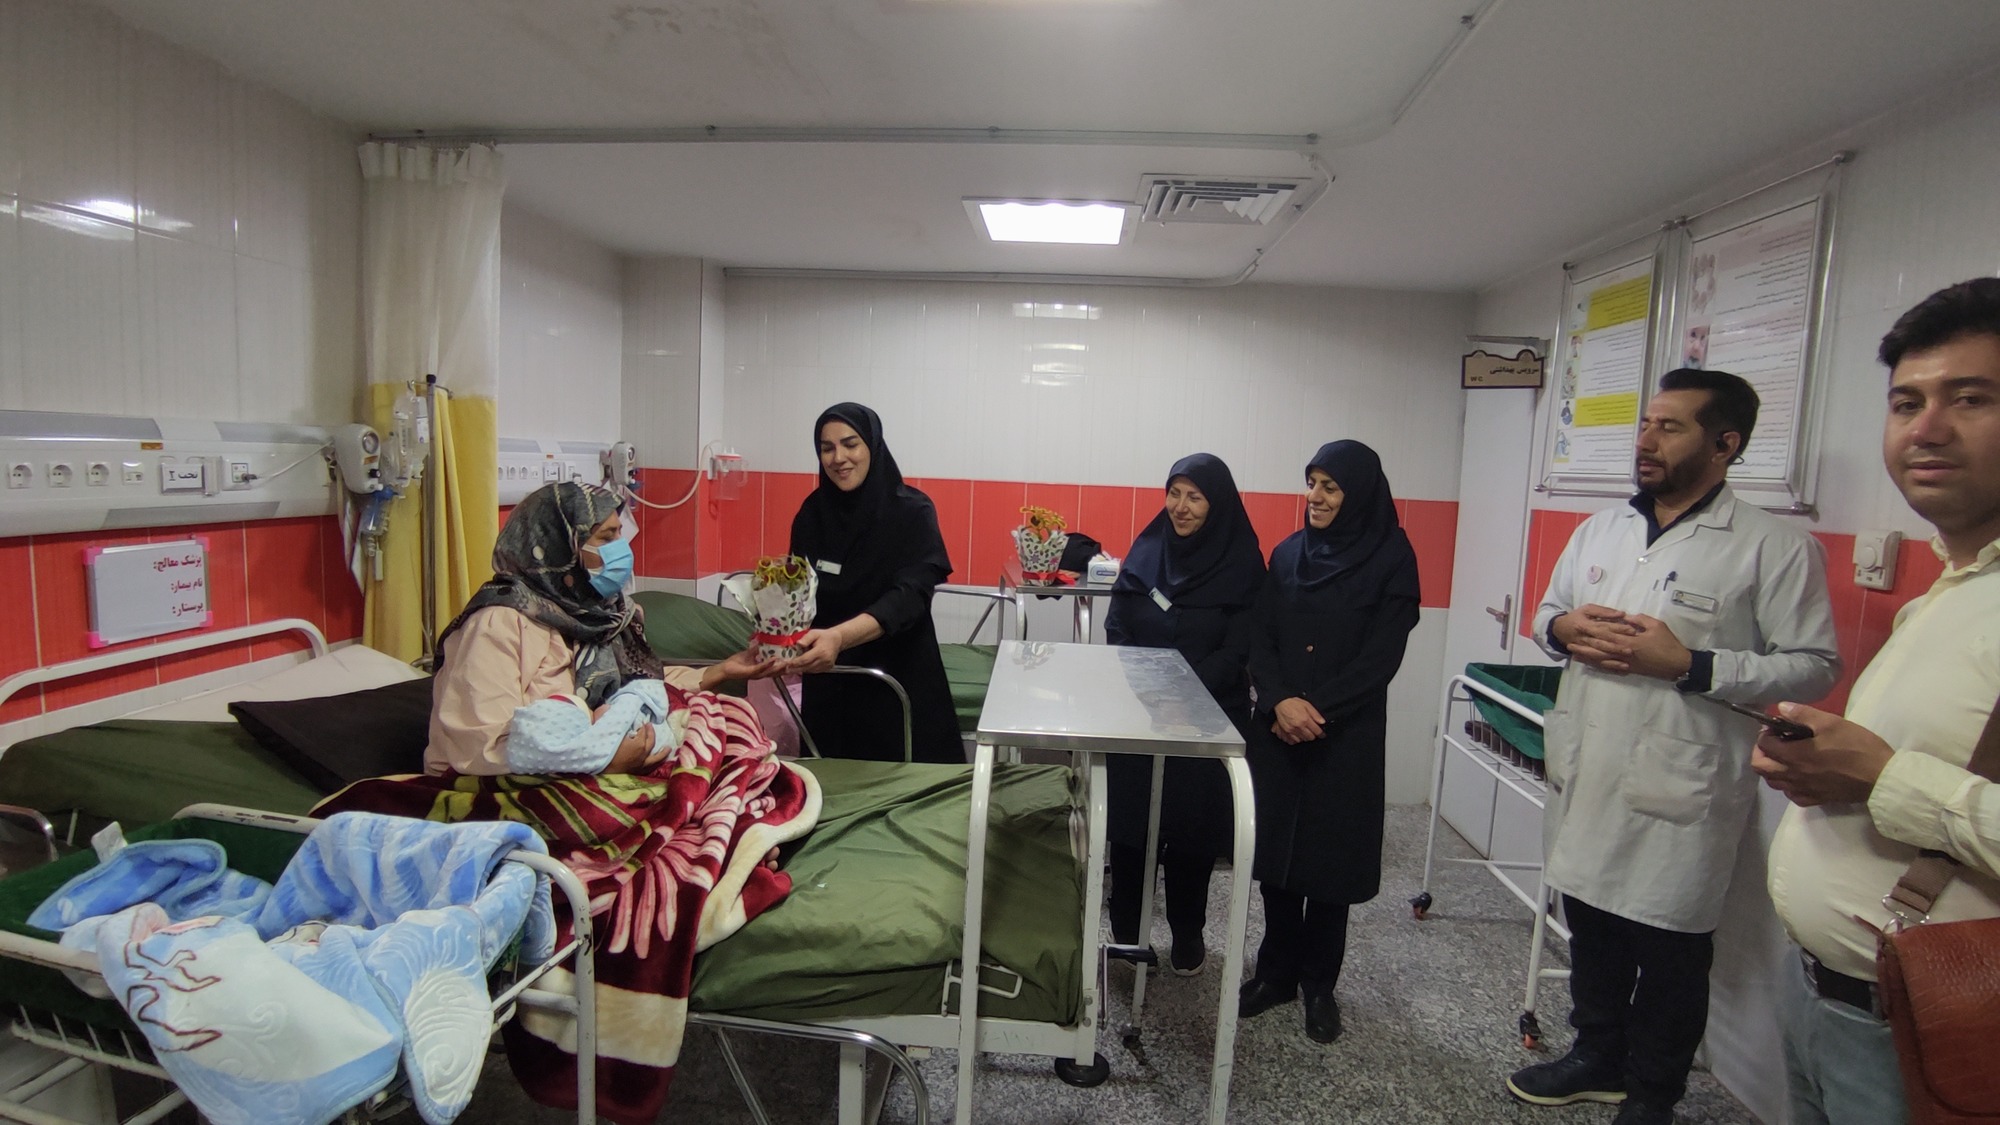 اهداء گلدان به مادران زایمان کرده در بیمارستان امام رضا (ع) شهرستان کبود راهنگ بمناسبت هفته ملی جمعیت